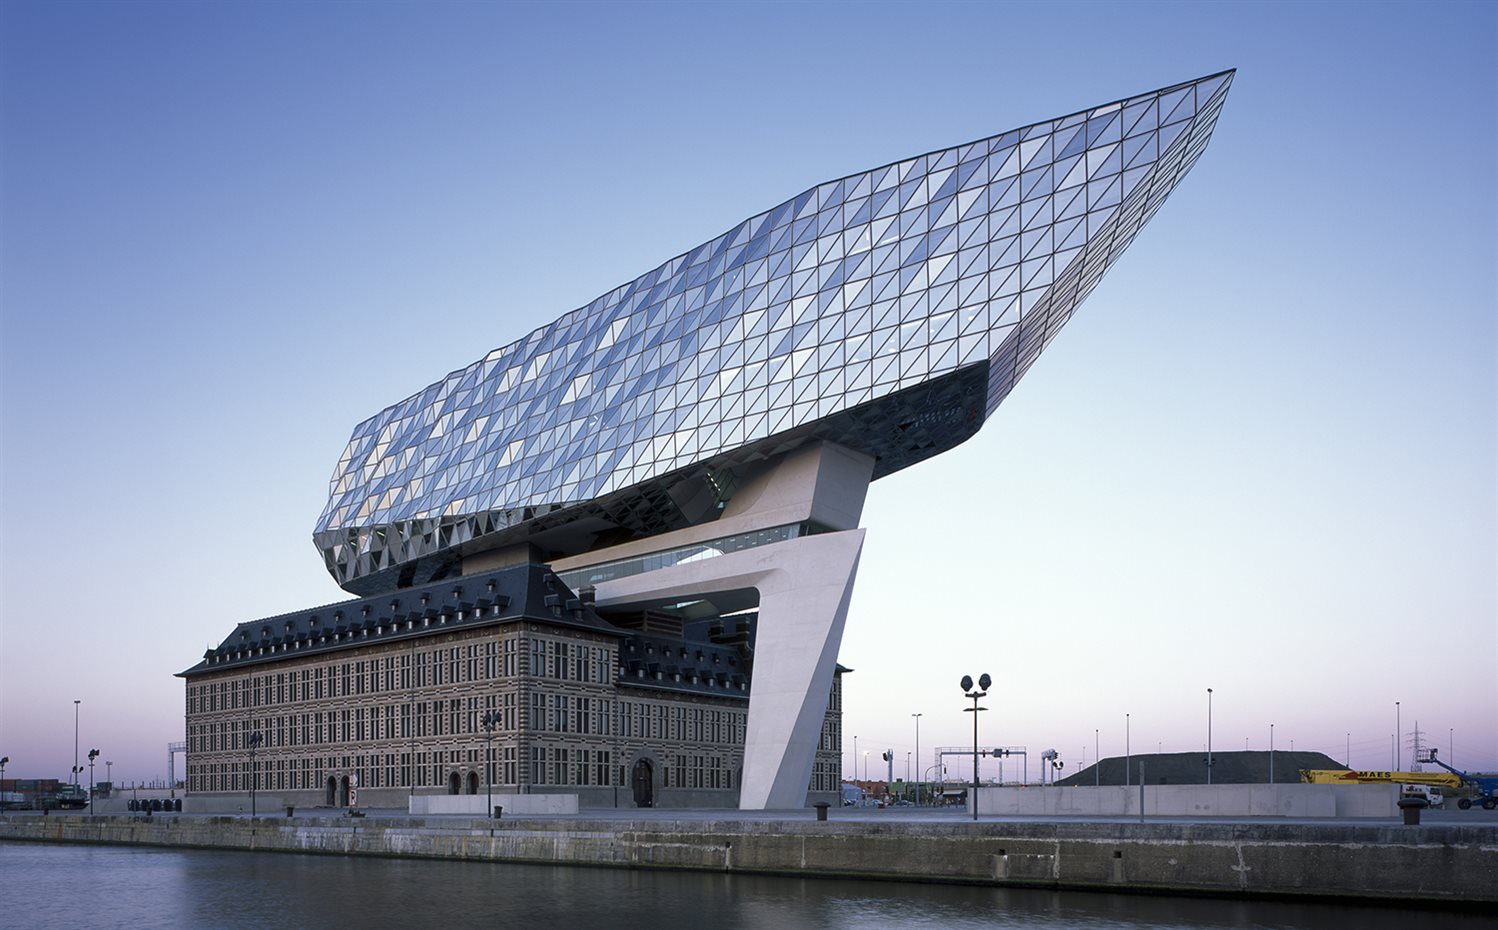 Sede de la autoridad portuaria de Amberes, Bélgica, Zaha Hadid